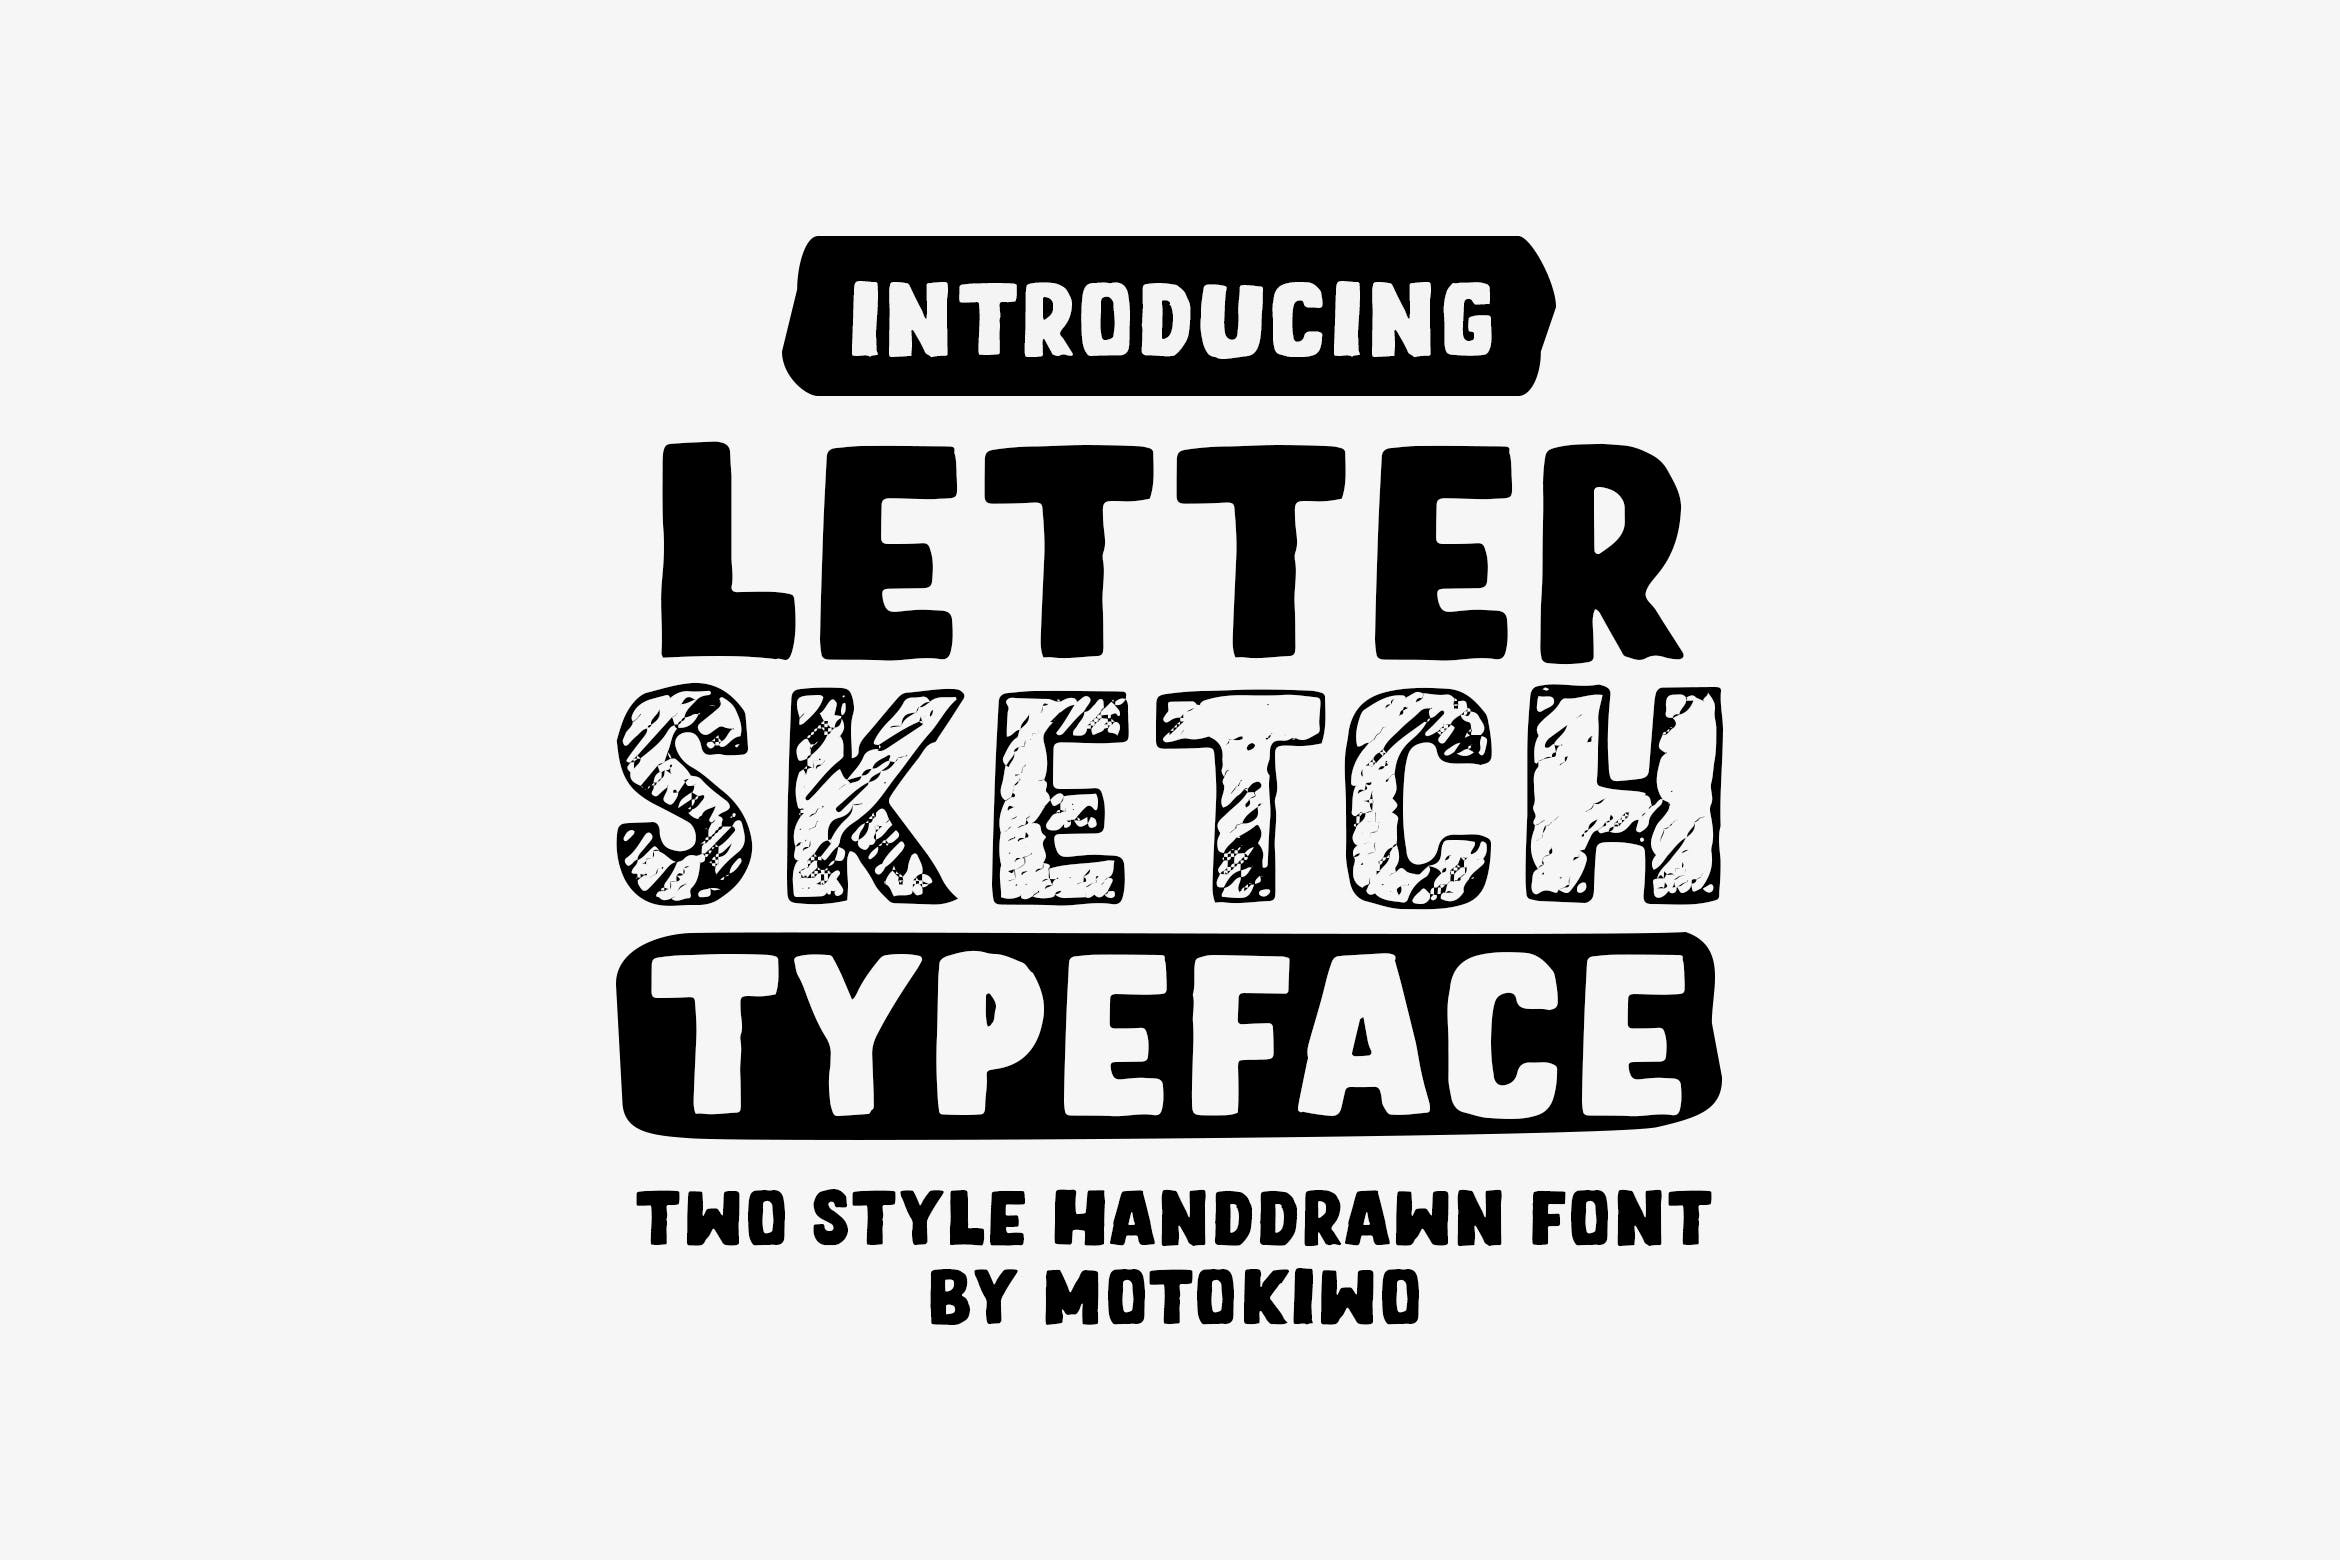 铅笔素描风格＆实心填充英文无衬线字体蚂蚁素材精选 Letter Sketch Typeface插图